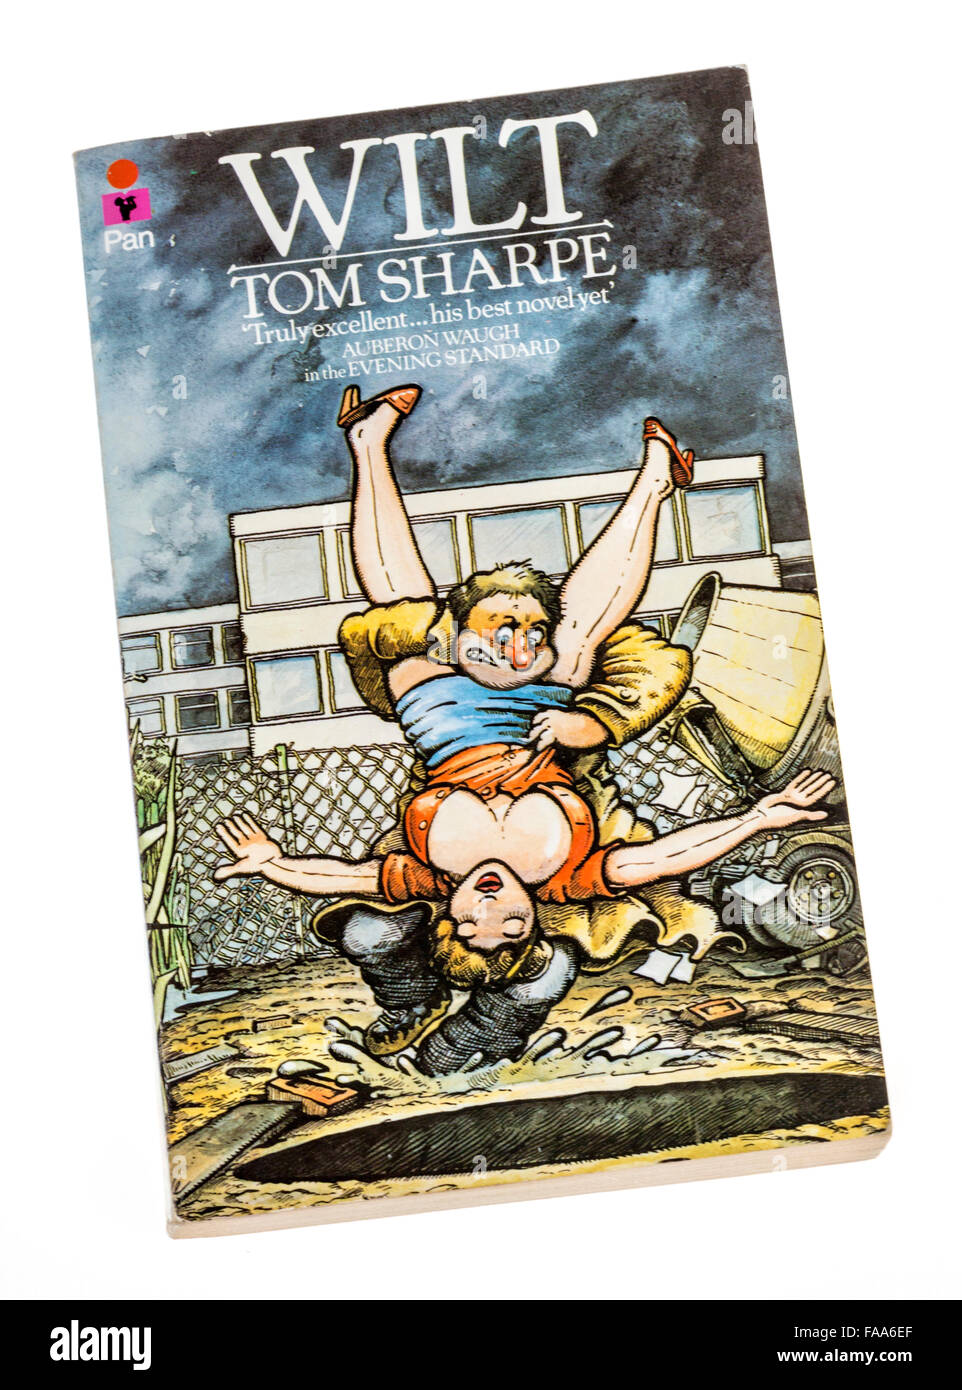 Welken von Tom Sharpe-Buch-Cover von Pan veröffentlicht Stockfoto